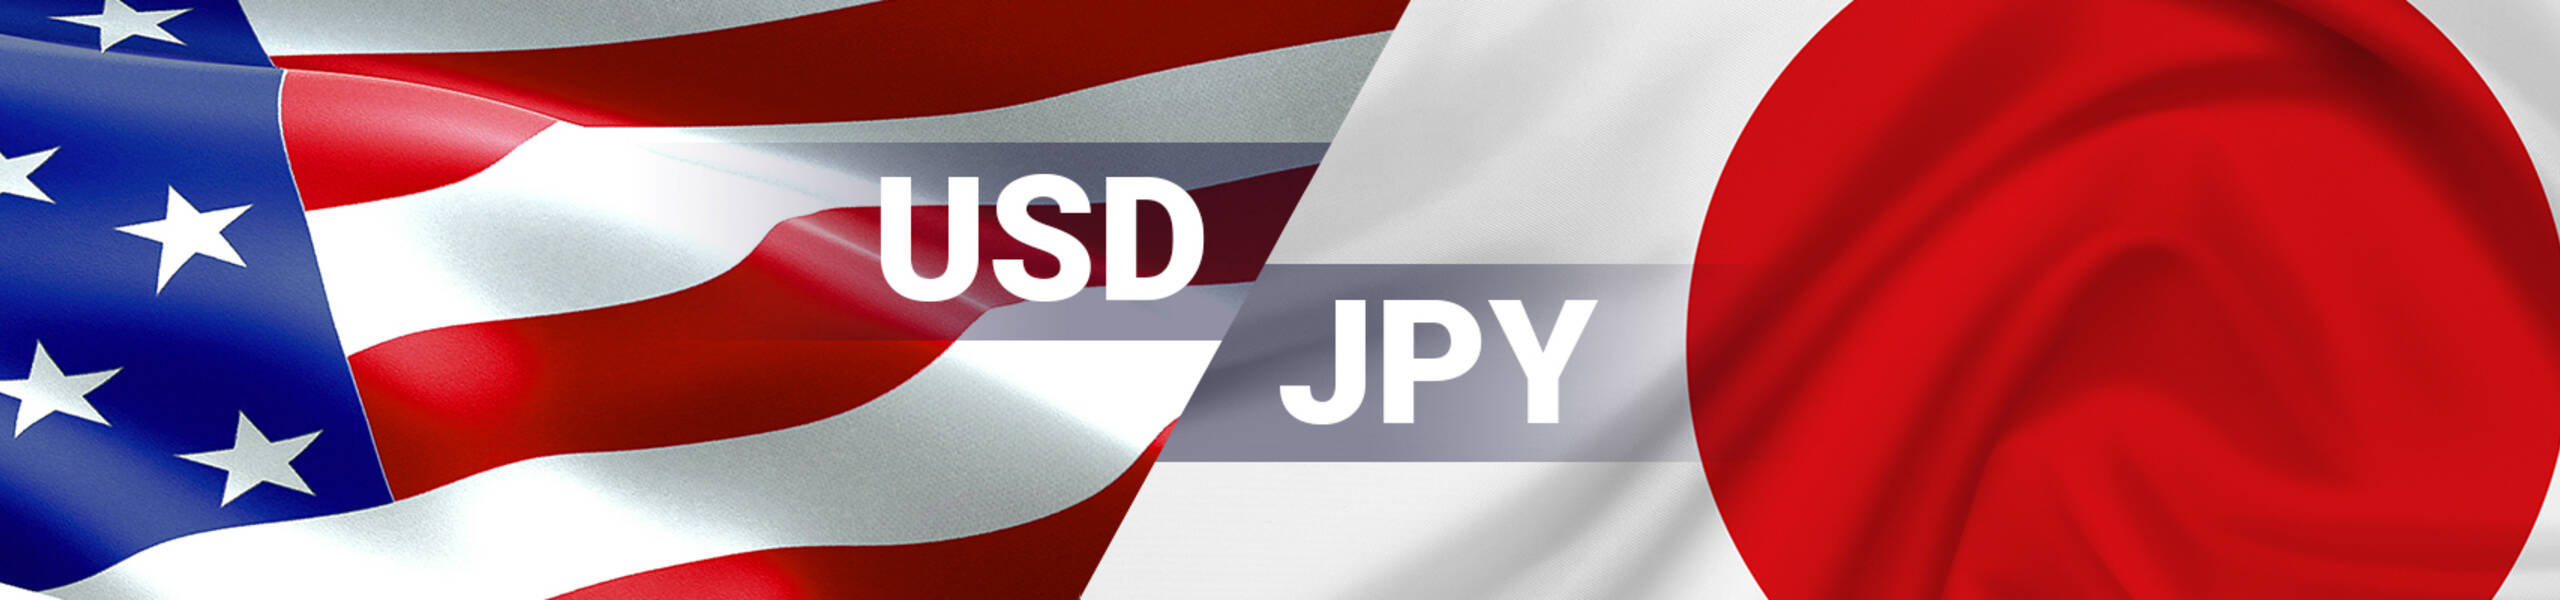 USD/JPY enfrentando zona de vendedores en el corto plazo